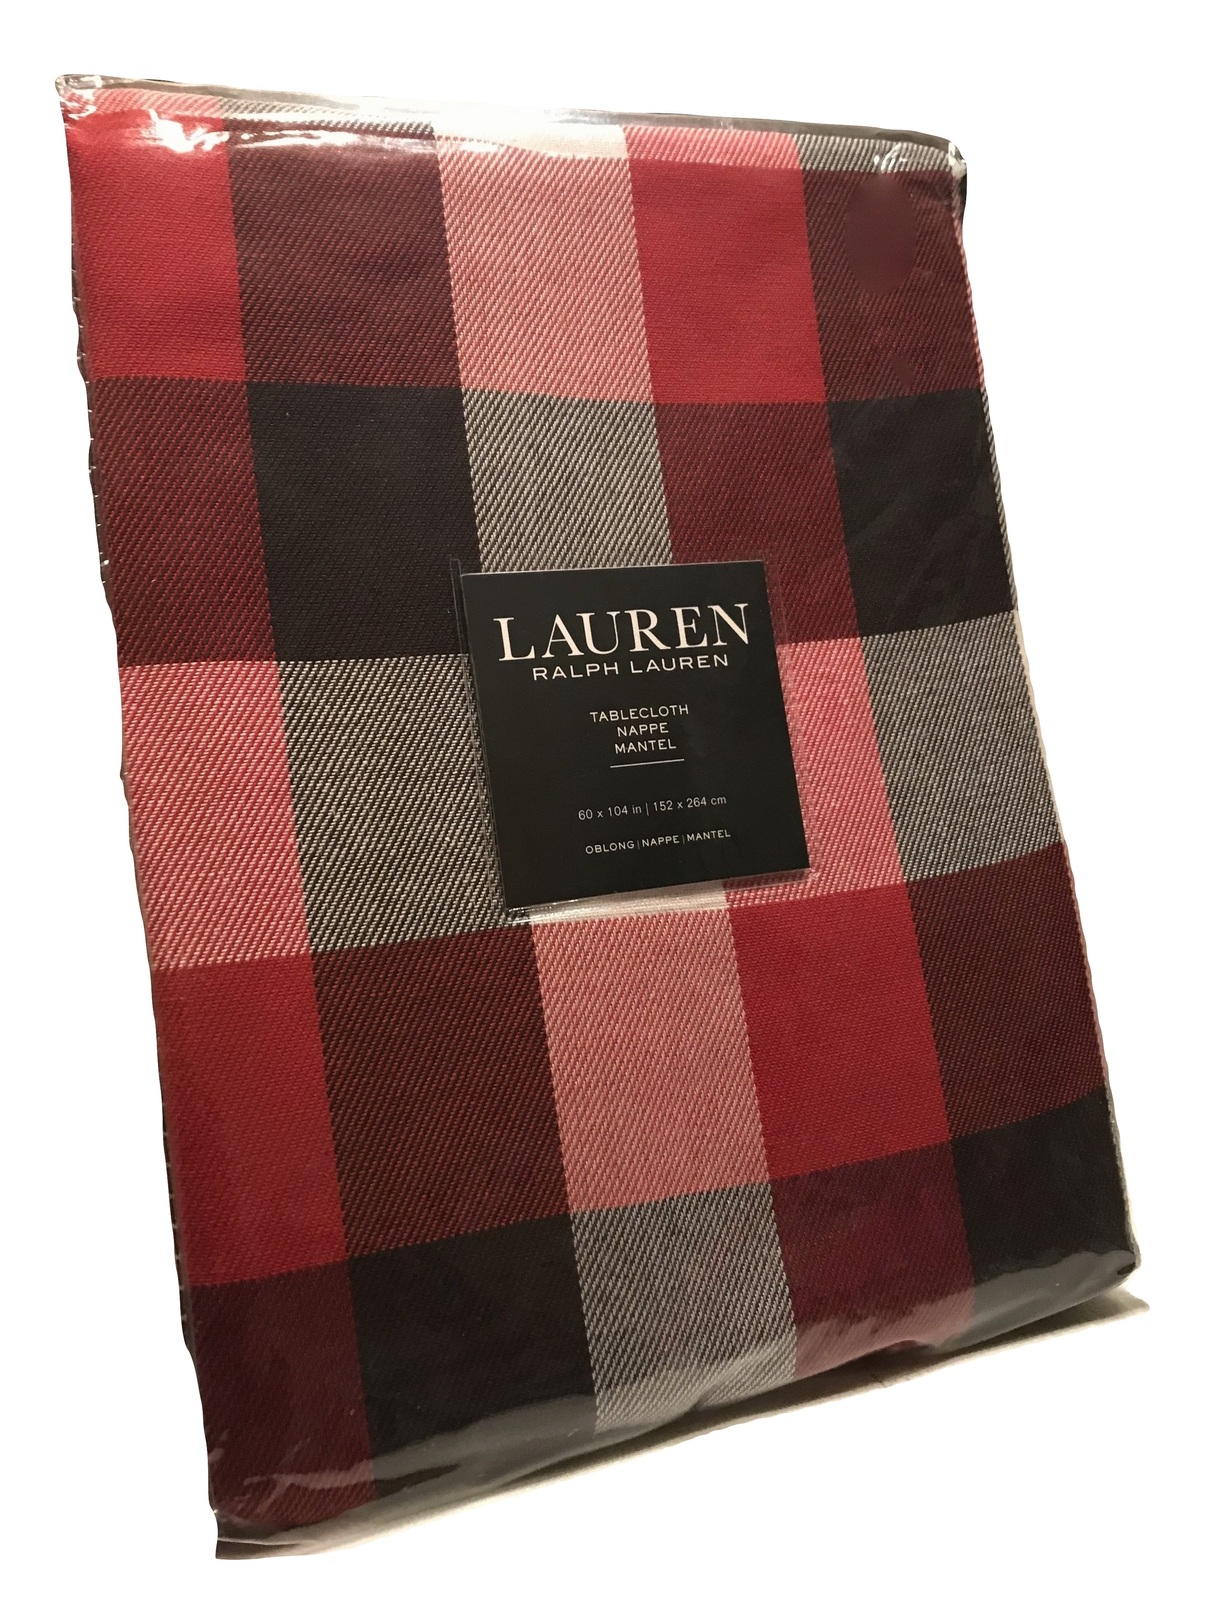 Lauren Ralph Lauren Buffalo Checkered Tablecloth, 60 x 104